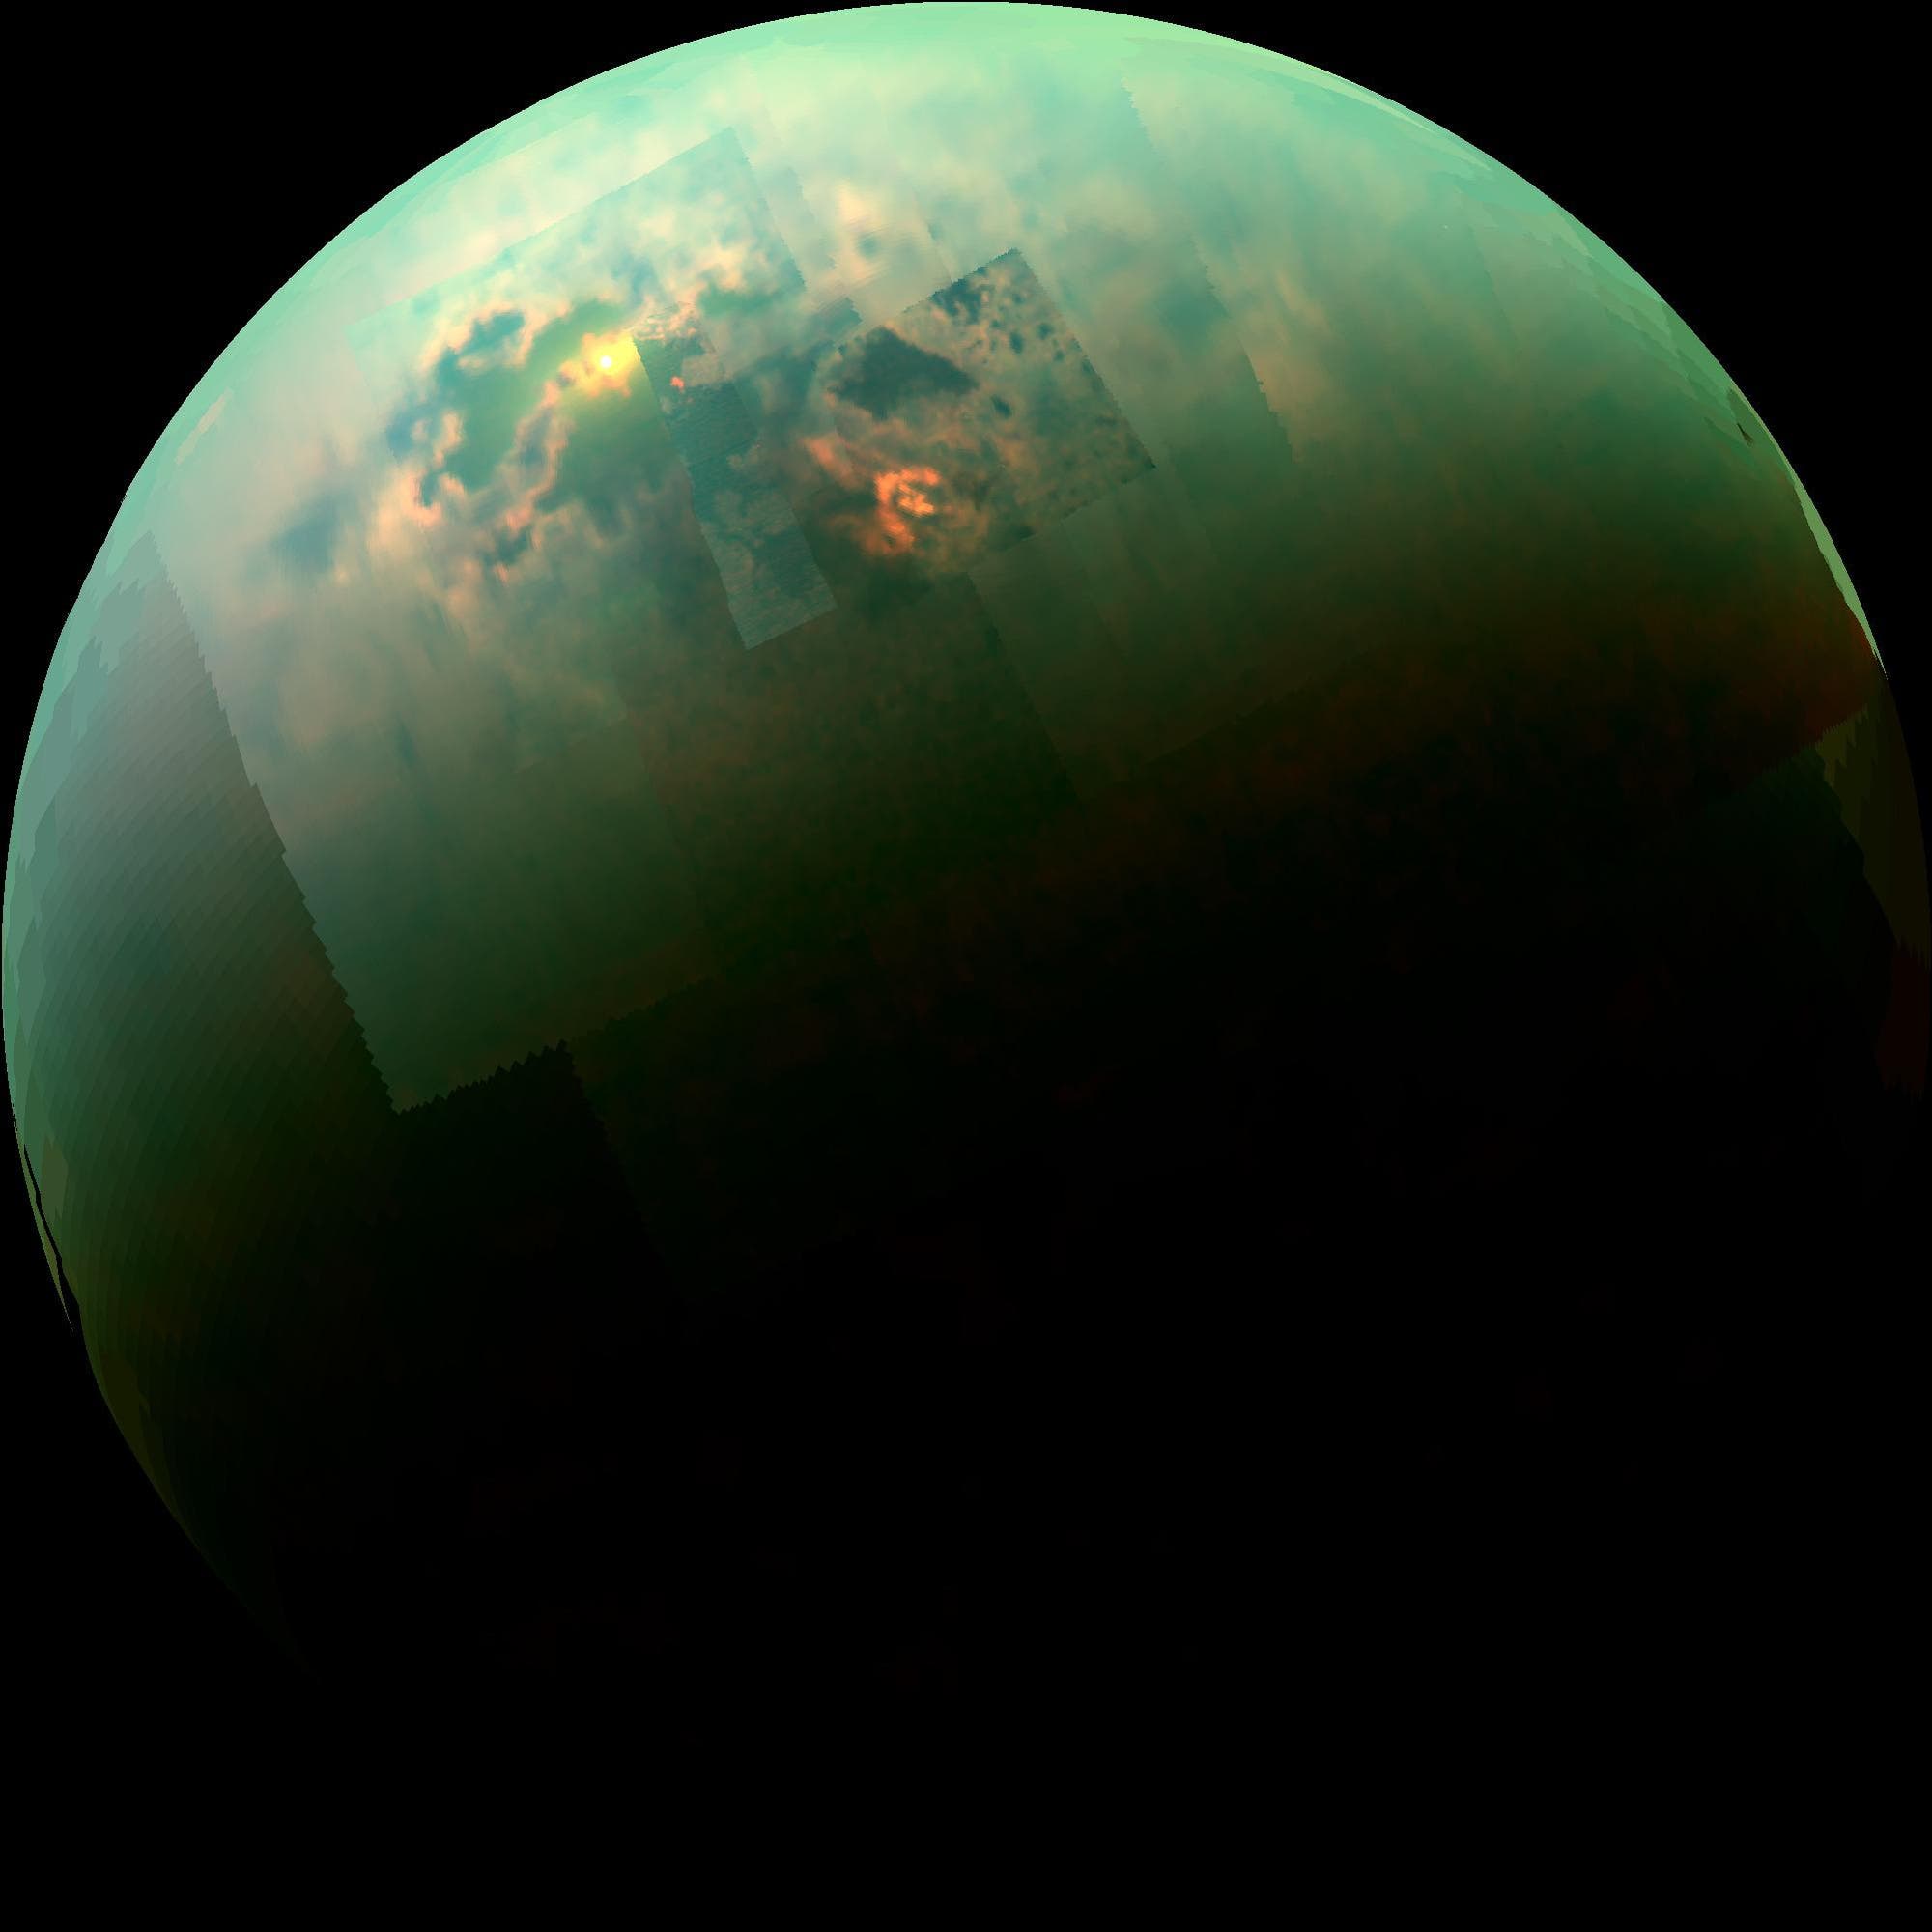 Sonnenreflexion auf dem Titan